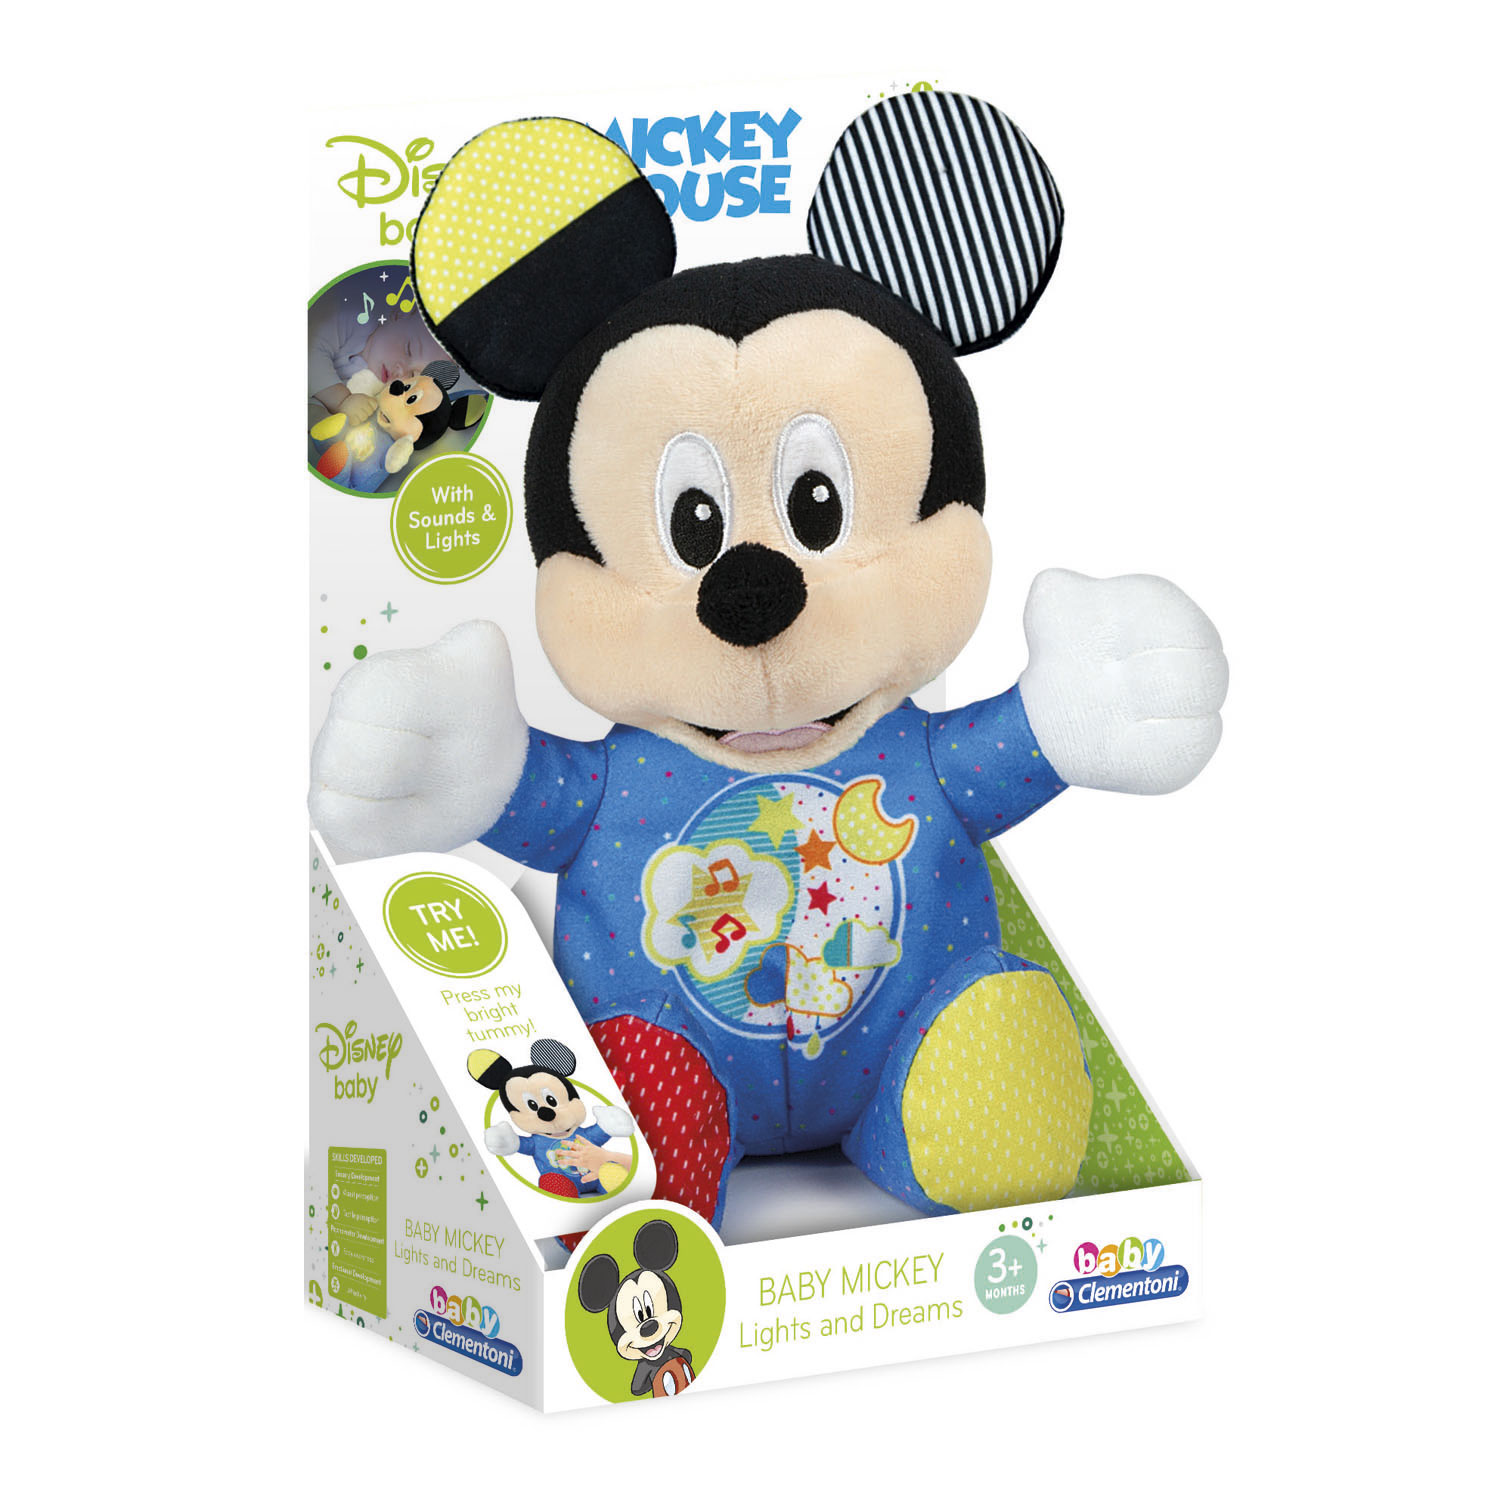 Honderd jaar Zielig uitvegen Clementoni Mickey Mouse Knuffel met Muziek en Licht online kopen | Lobbes  Speelgoed